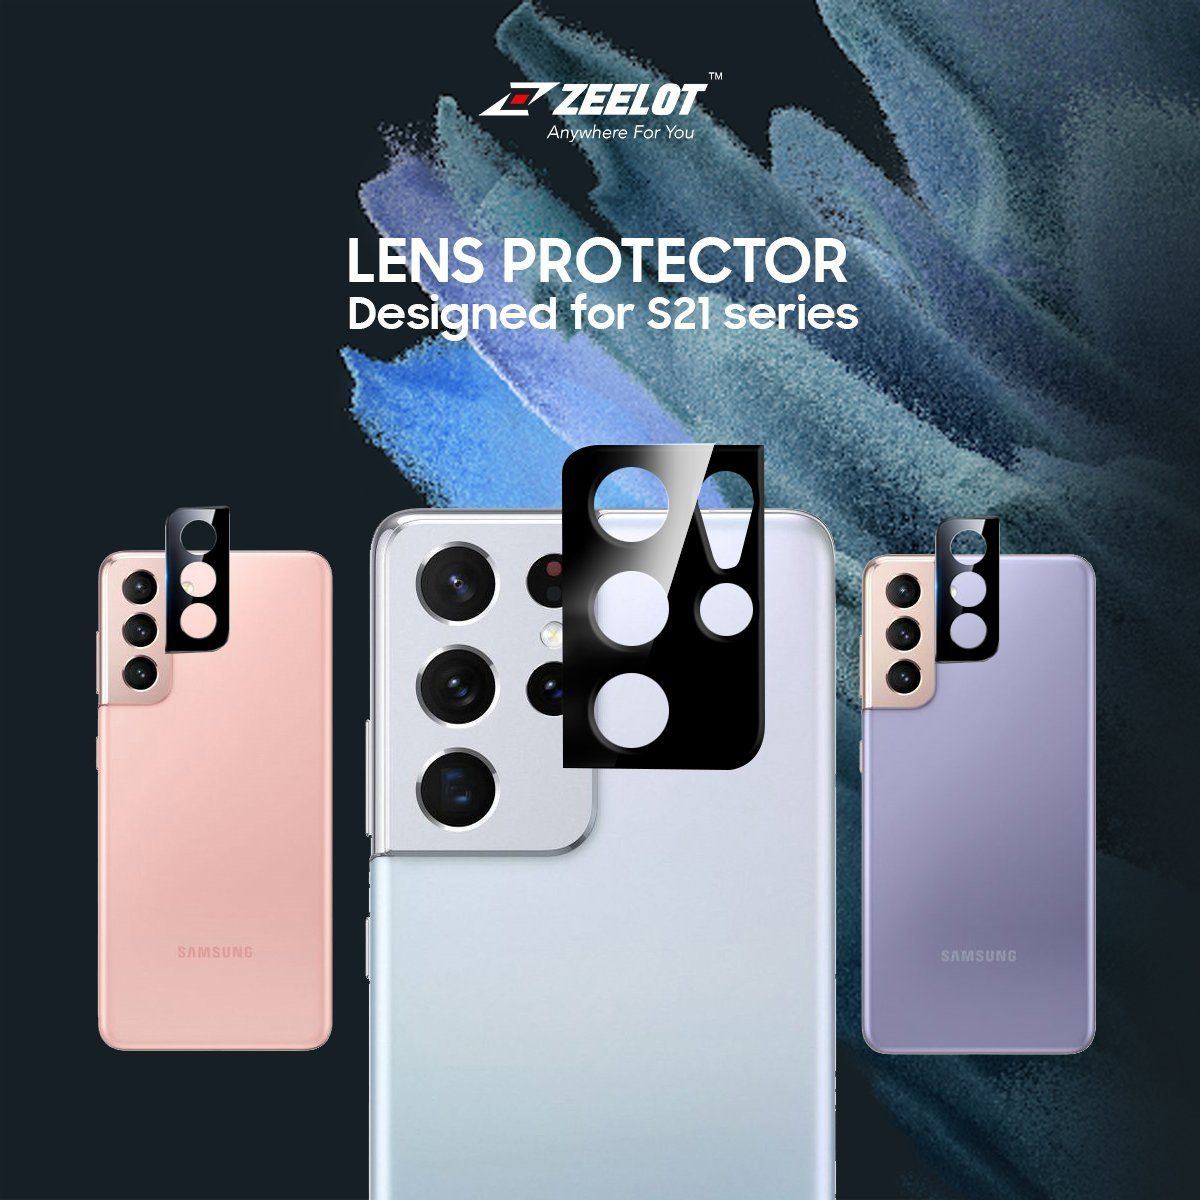 ZEELOT Samsung Galaxy S21+ Lens Protector, Black S21 ZEELOT 